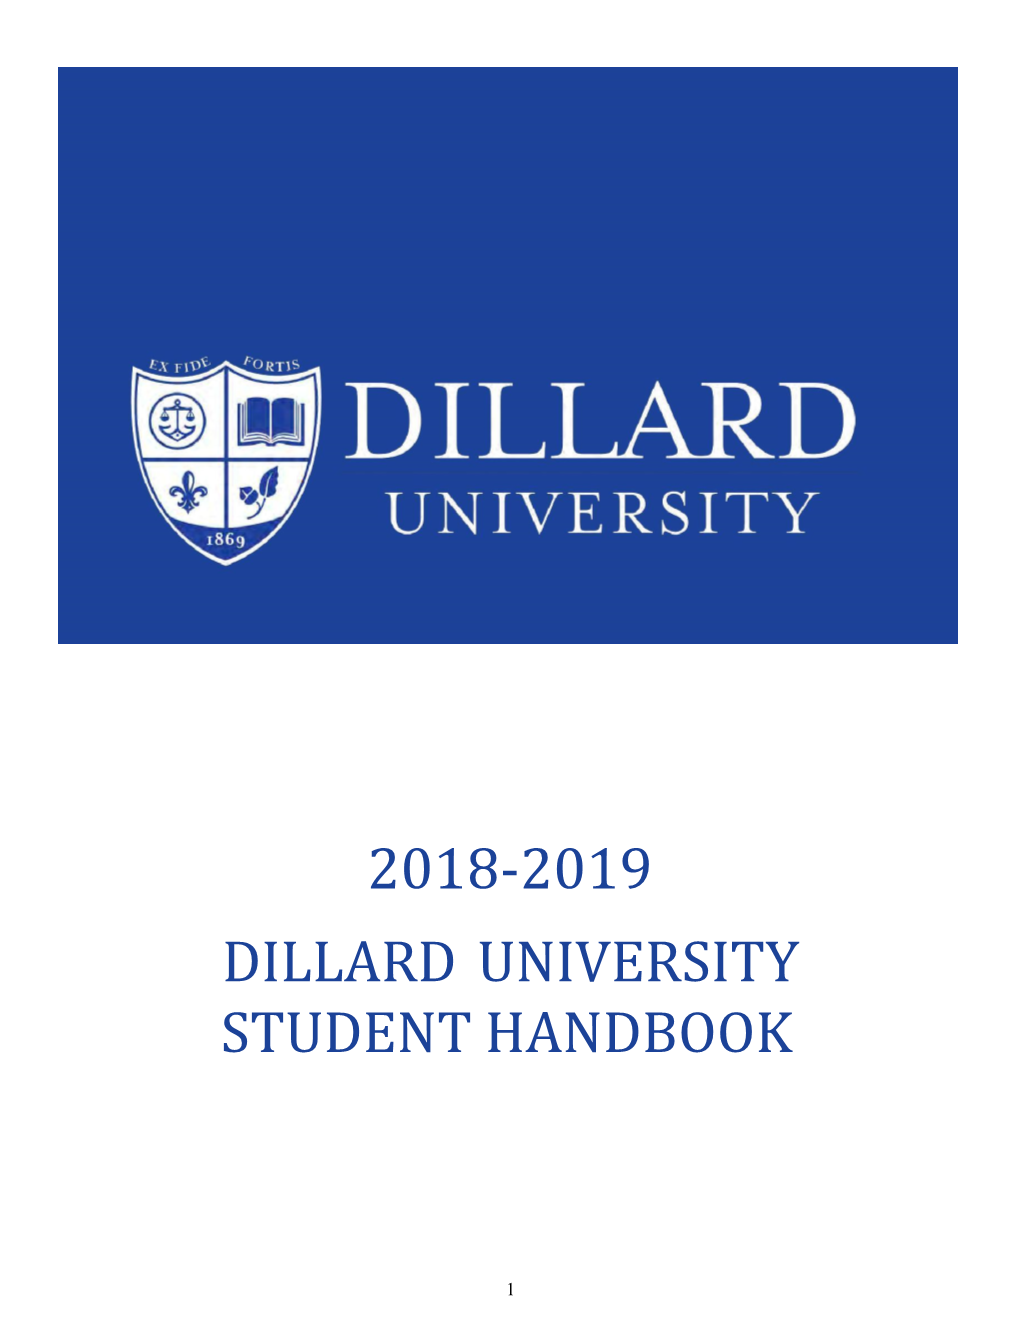 2018-2019 Student Handbook